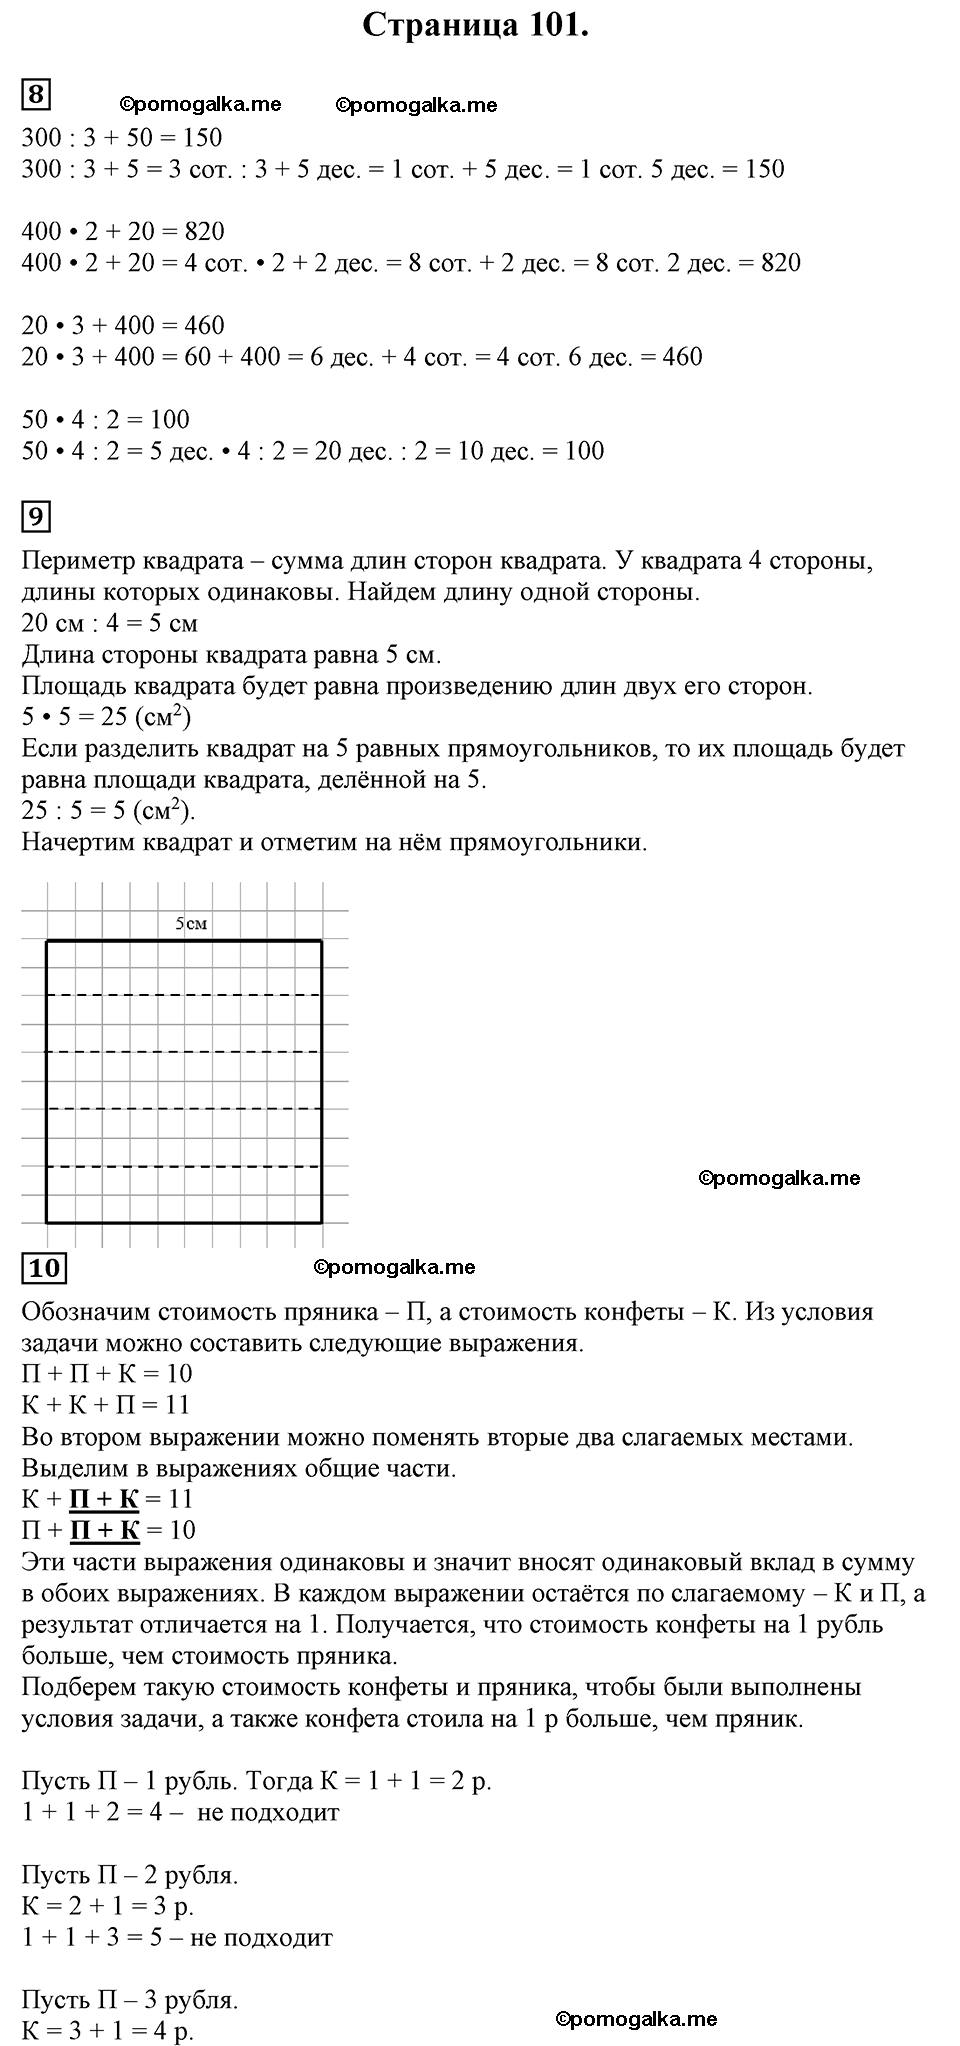 Страница №101 Часть 2 математика 3 класс Дорофеев